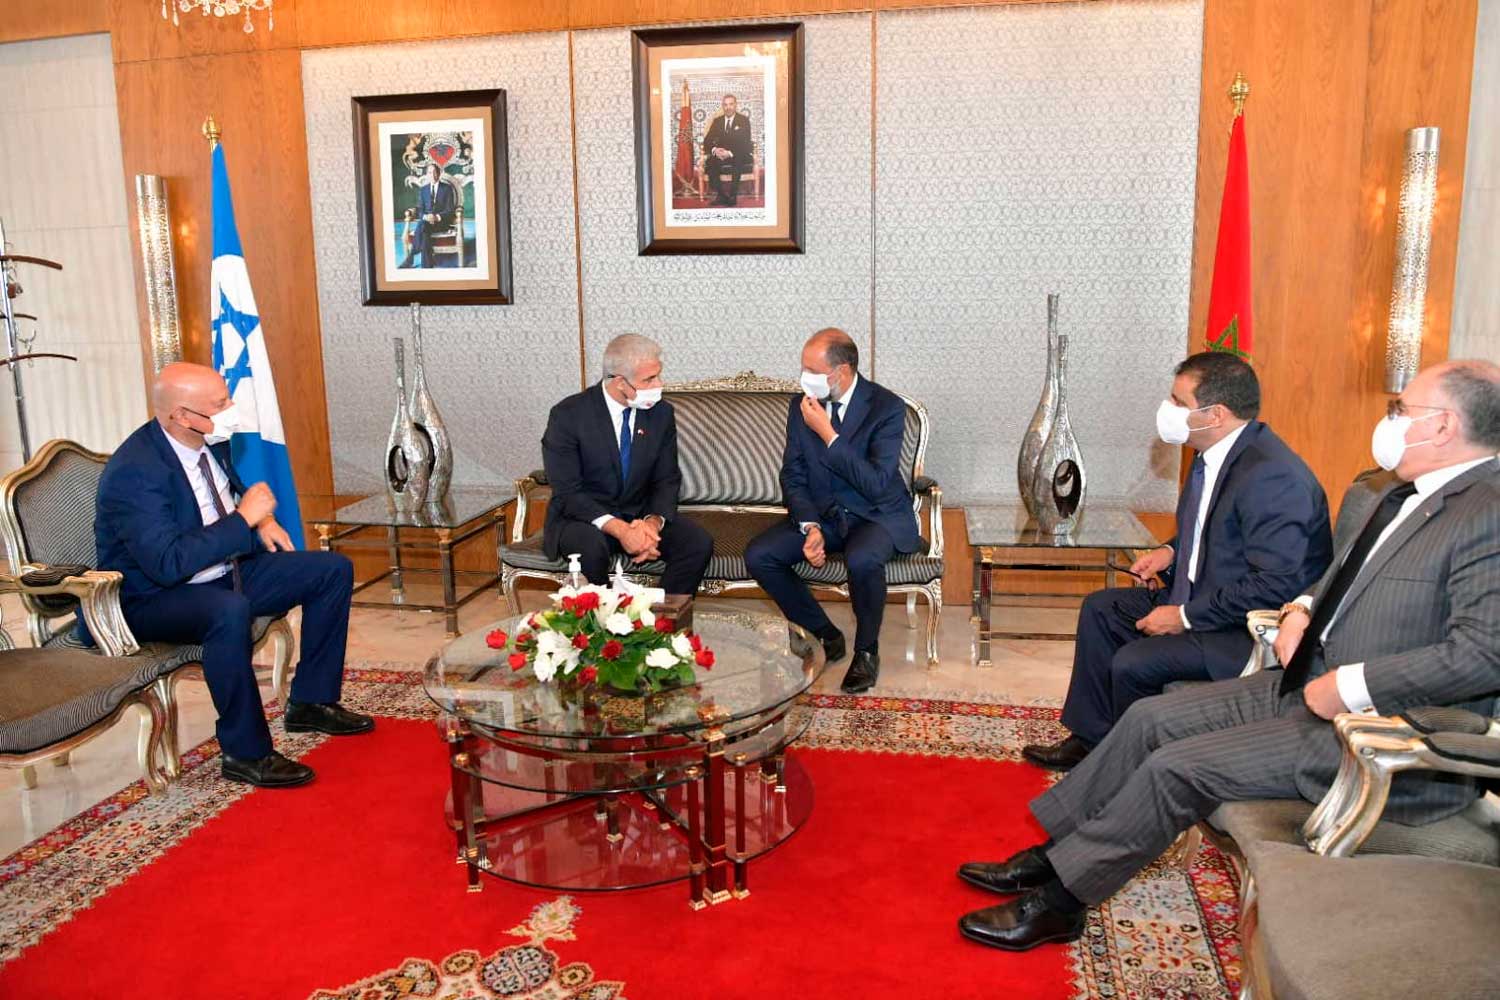 Lapid aterriza en Marruecos para iniciar una visita histórica